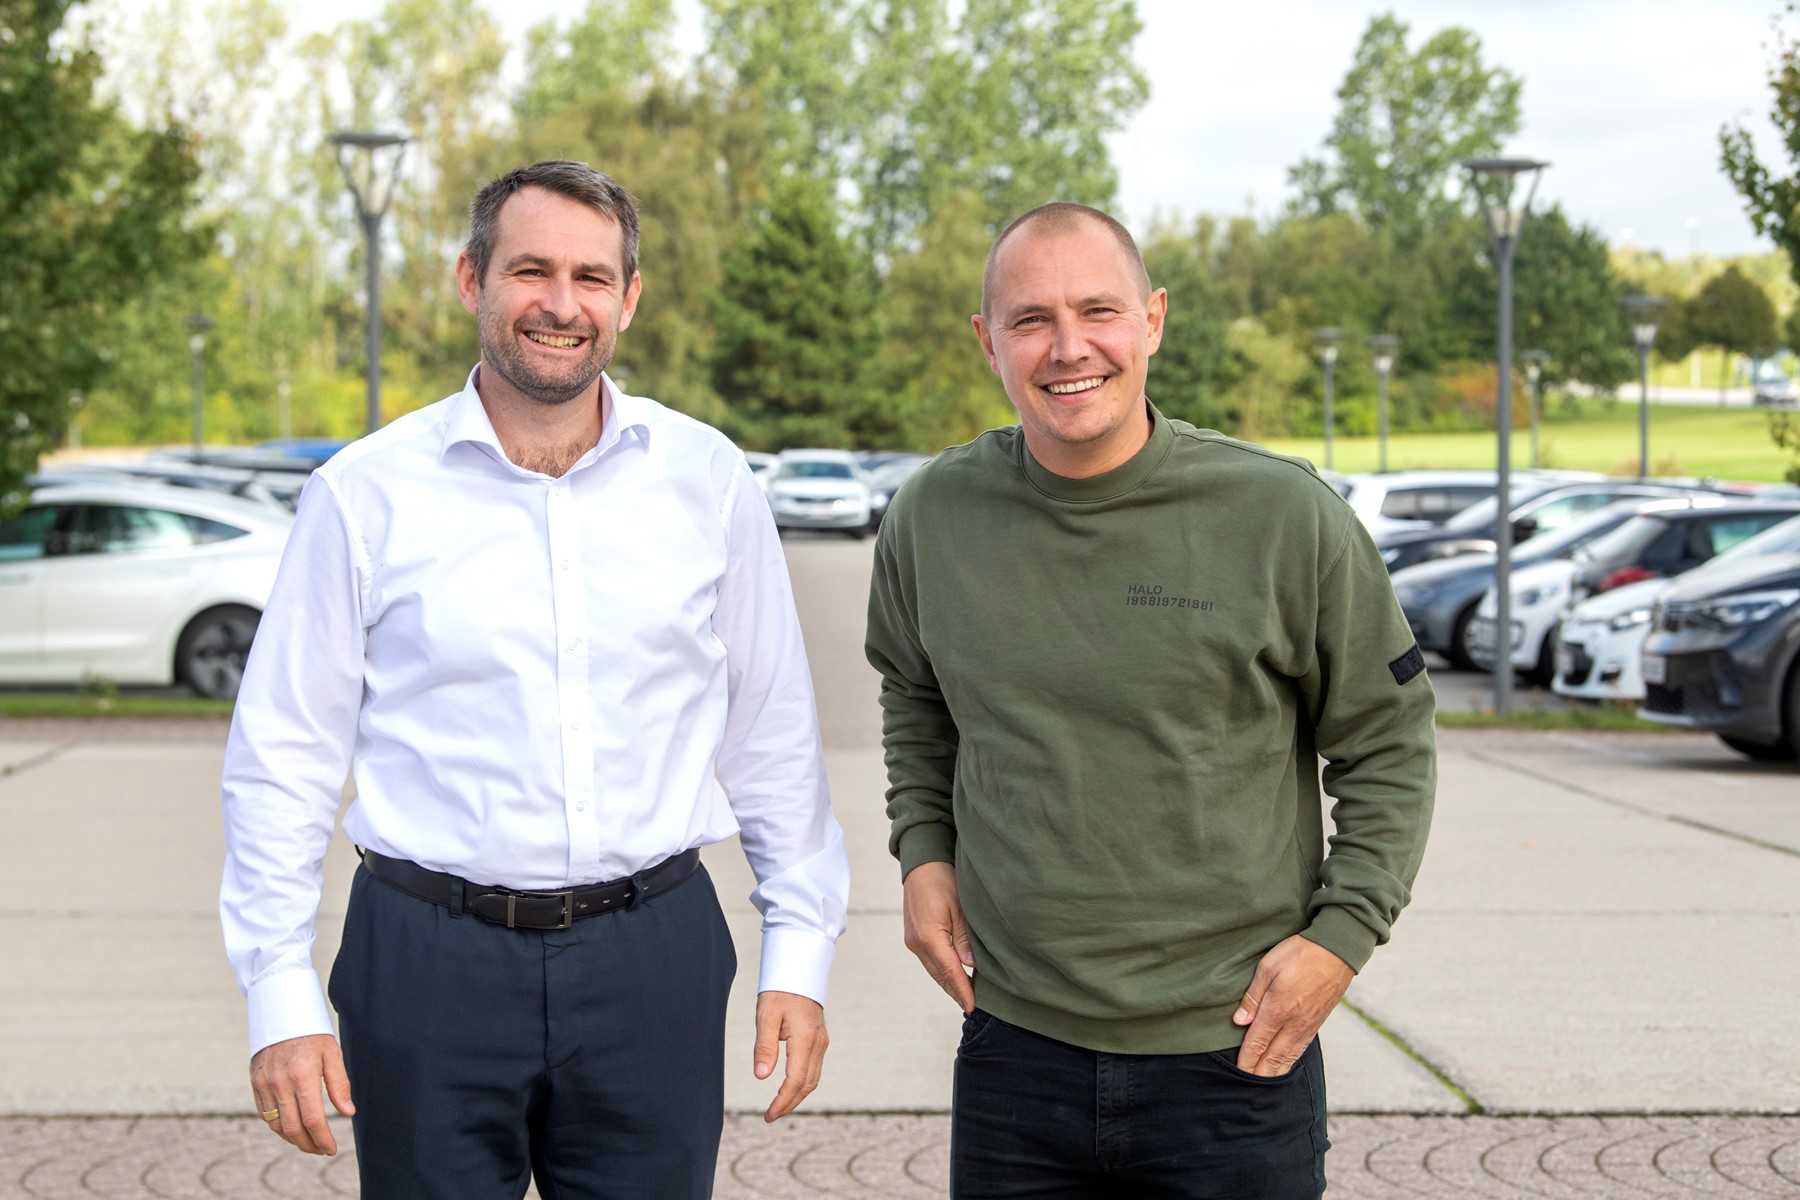 Thomas Hugo Møller, direktør i Great Dane Airlines, og Rasmus Nielsen, direktør i RareWine, giver i podcasten gode råd til rekruttering. Foto: Henrik Louis Simonsen.